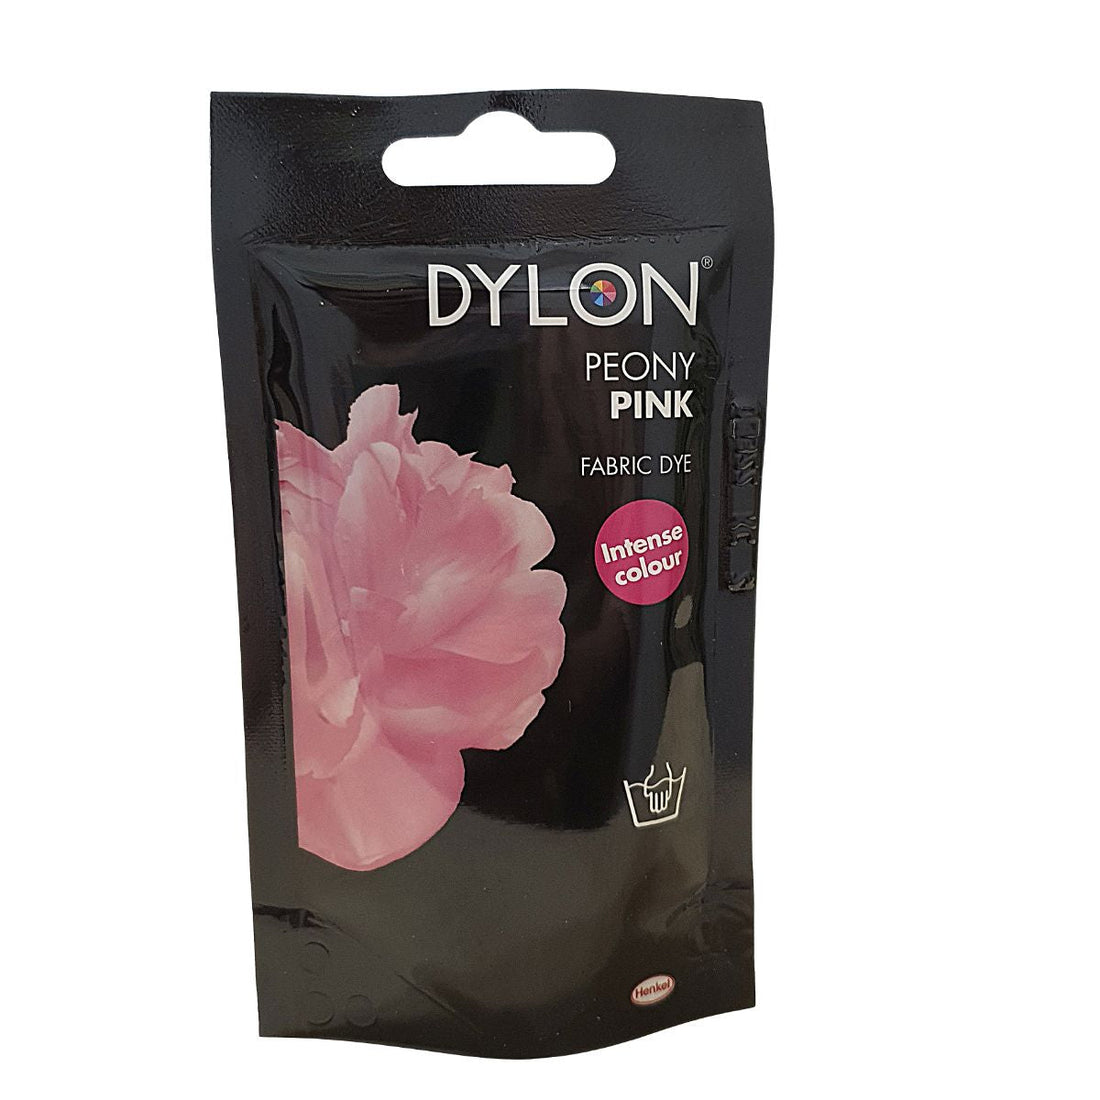 dylonhand fabric dye light pink